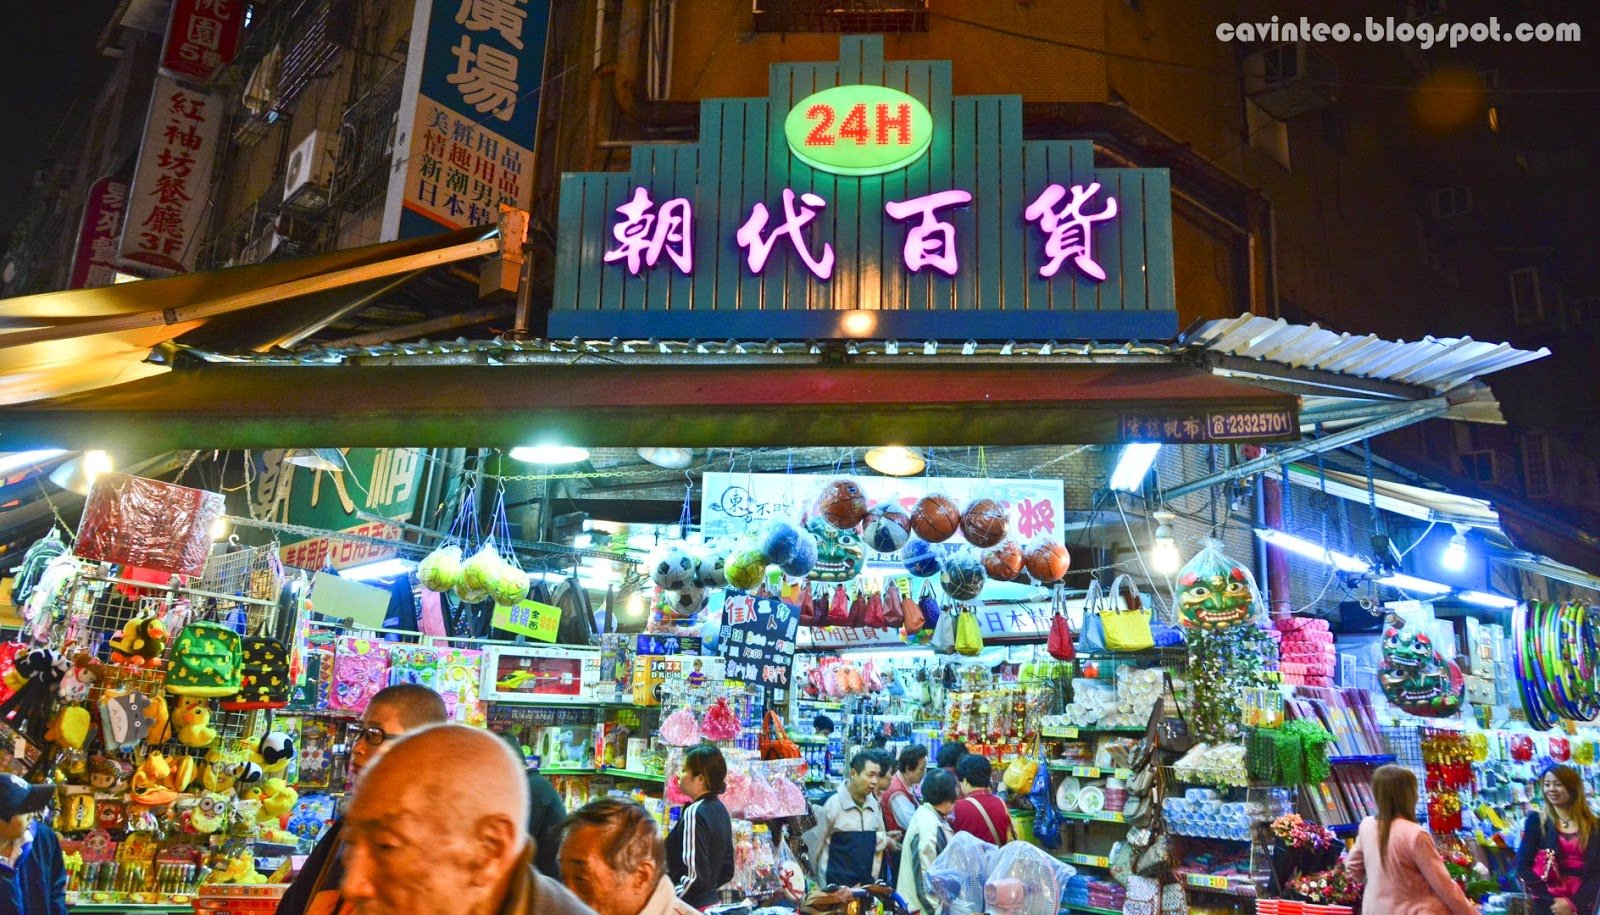 Ночной рынок гуанчжоу. Рынок шарик в Гуанчжоу. Ночные рынки Гуанчжоу. Рынок в Китае Гуанчжоу. Рынок Байюнь в Гуанчжоу.